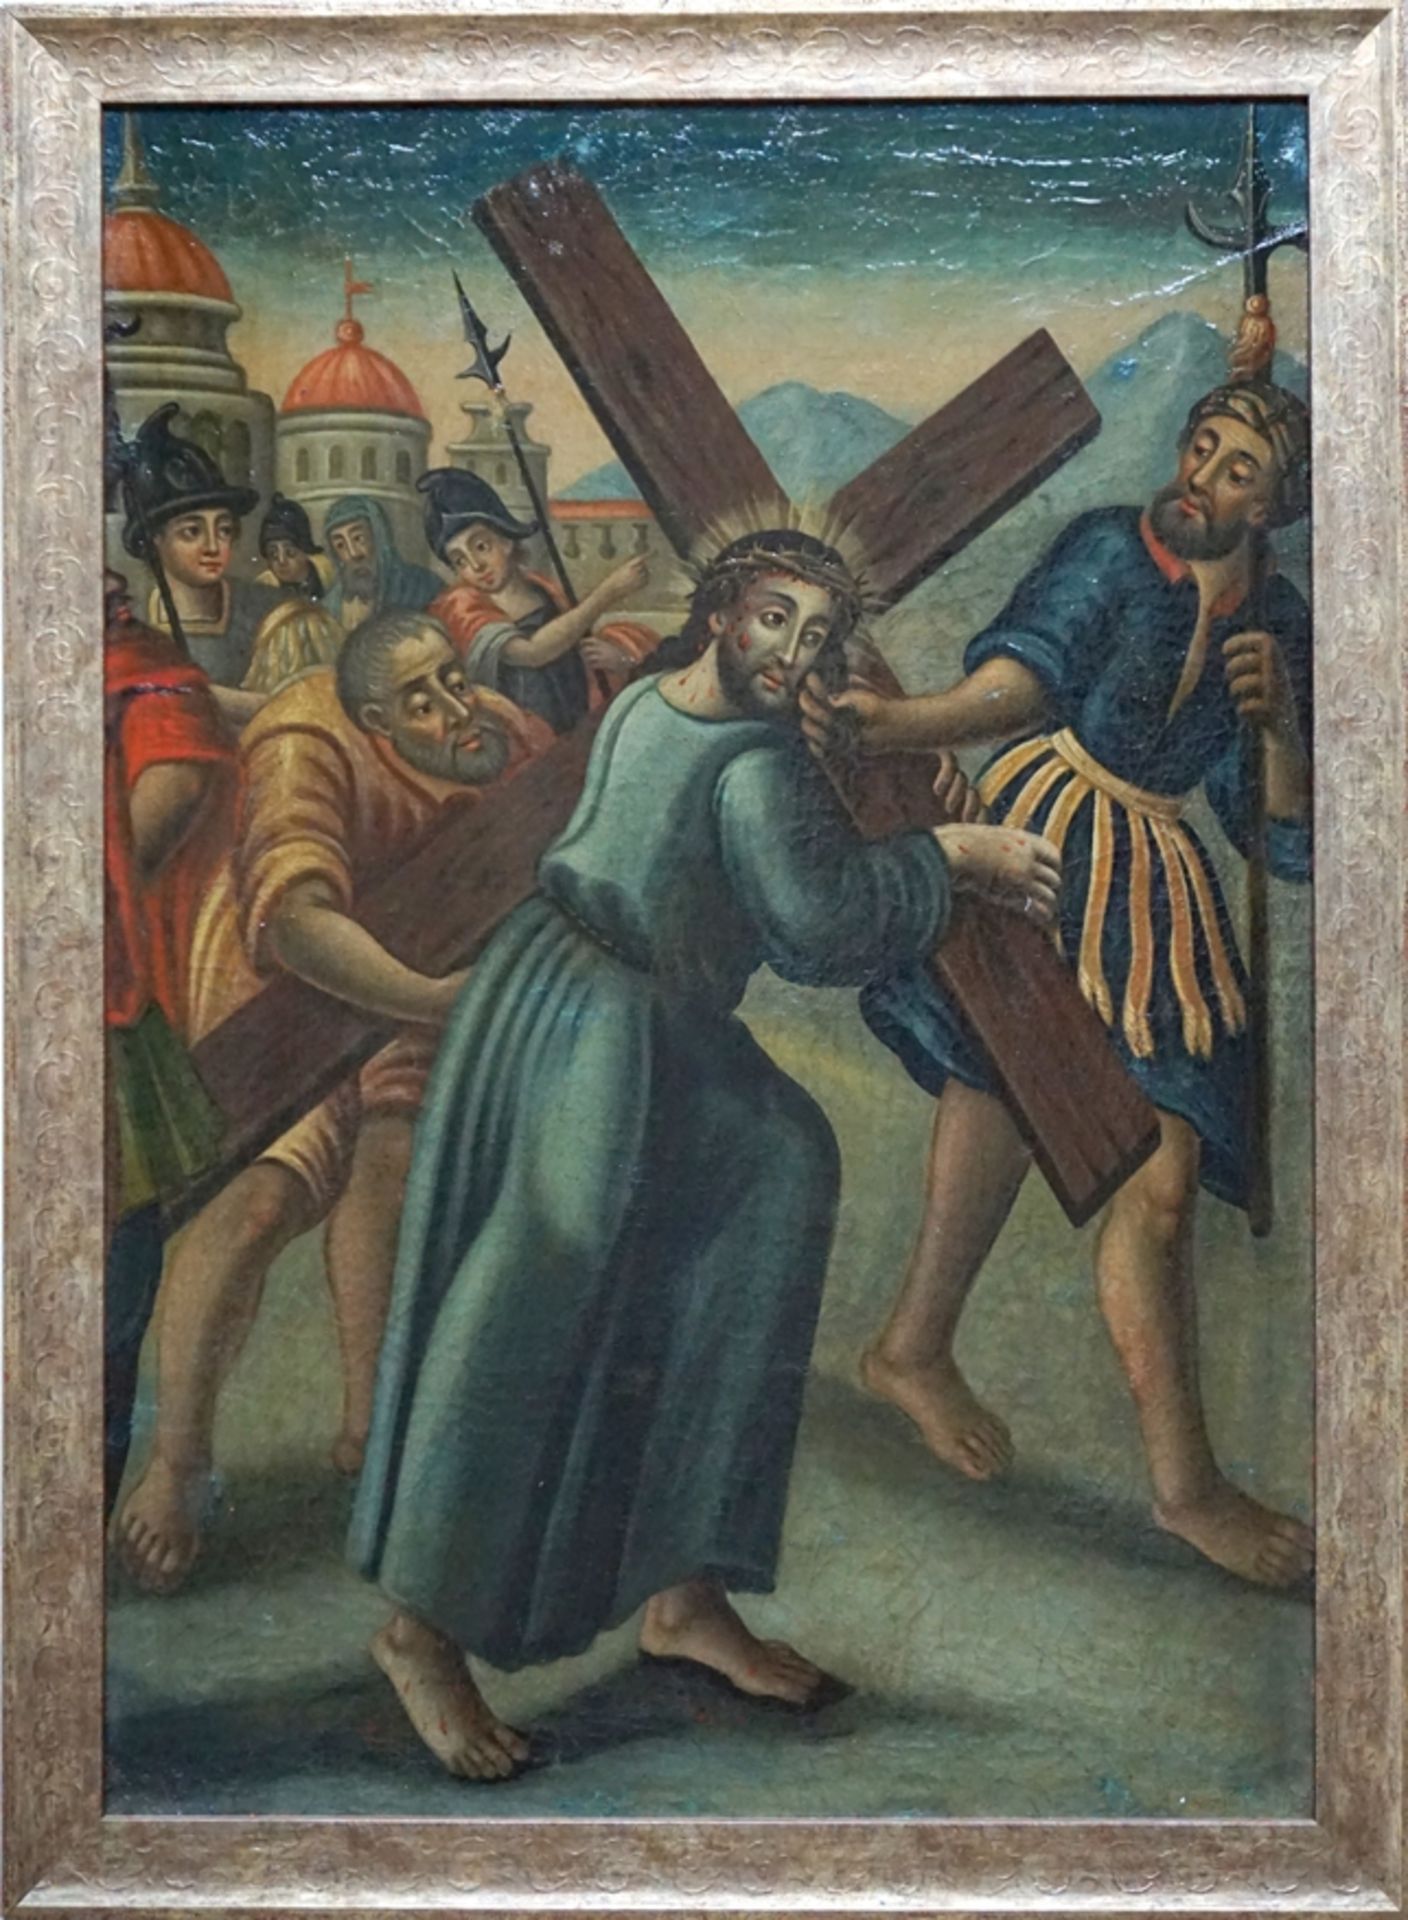 Anonyme/r Künstler/in, "Die Kreuztragung Christi", 1. Hälfte 18. Jh., Öl/Leinwand